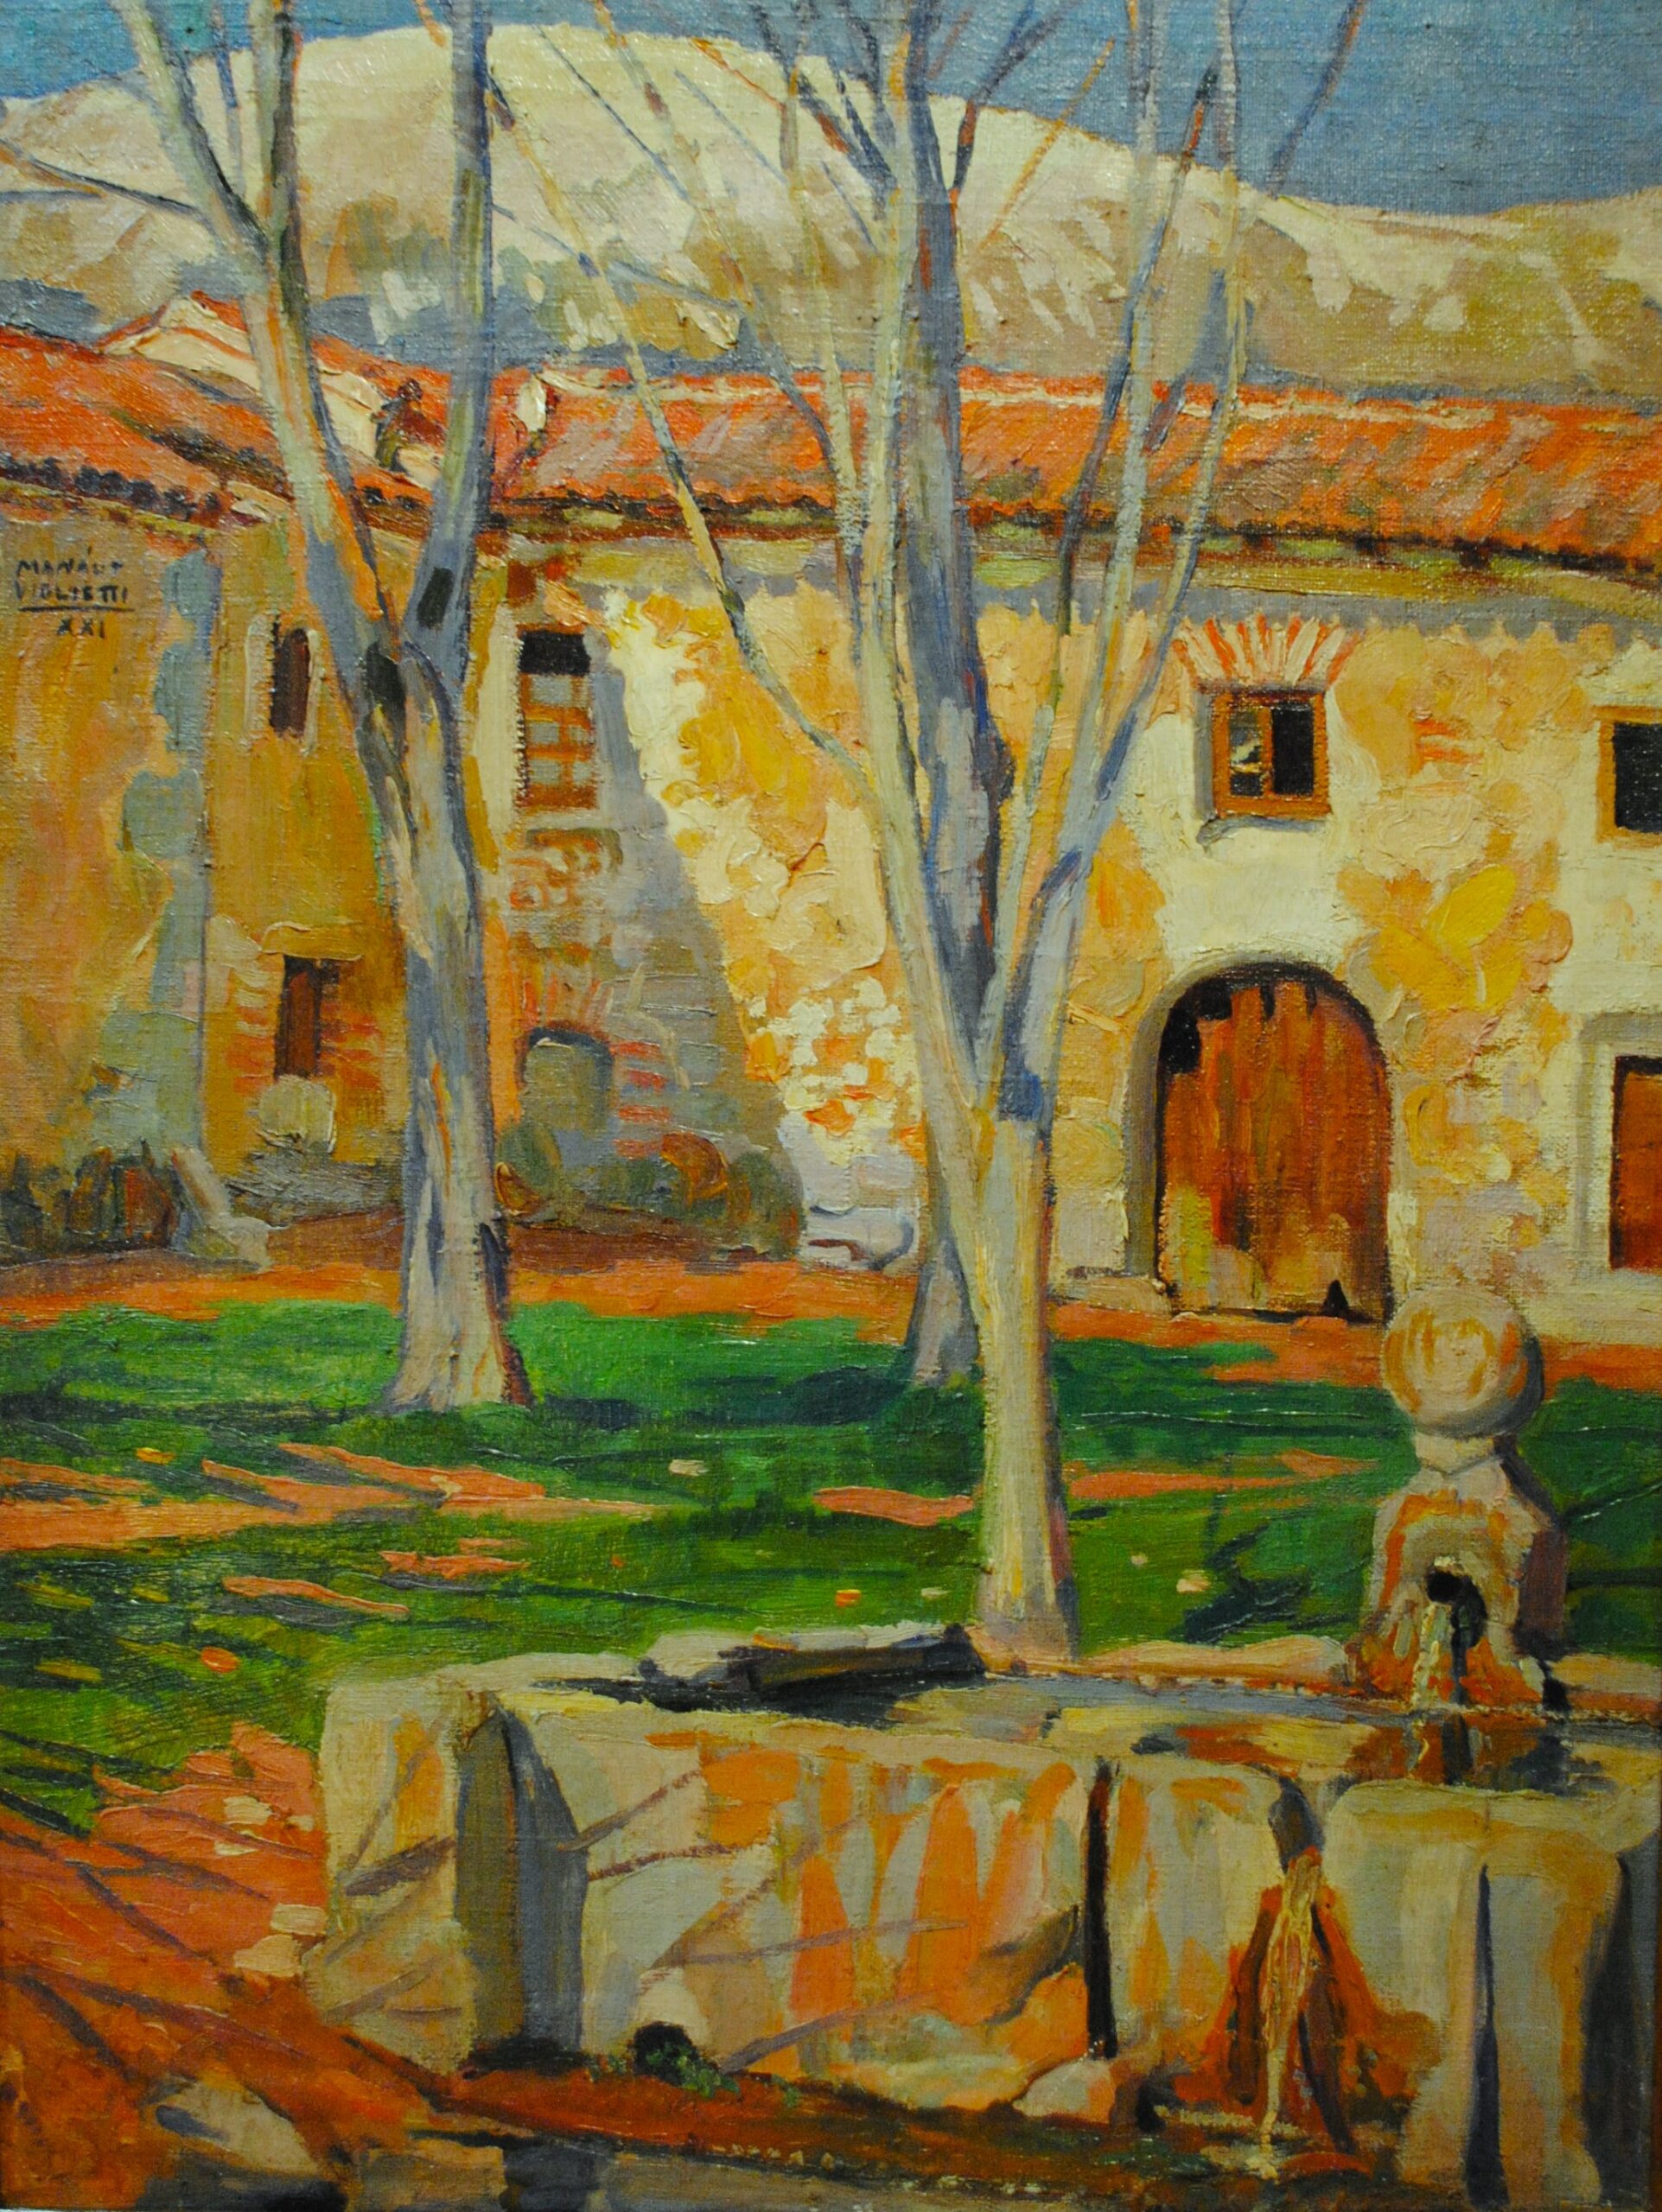 Pintura de José Manaut titulada El Paular, Madrid, 1921. Óleo sobre lienzo.